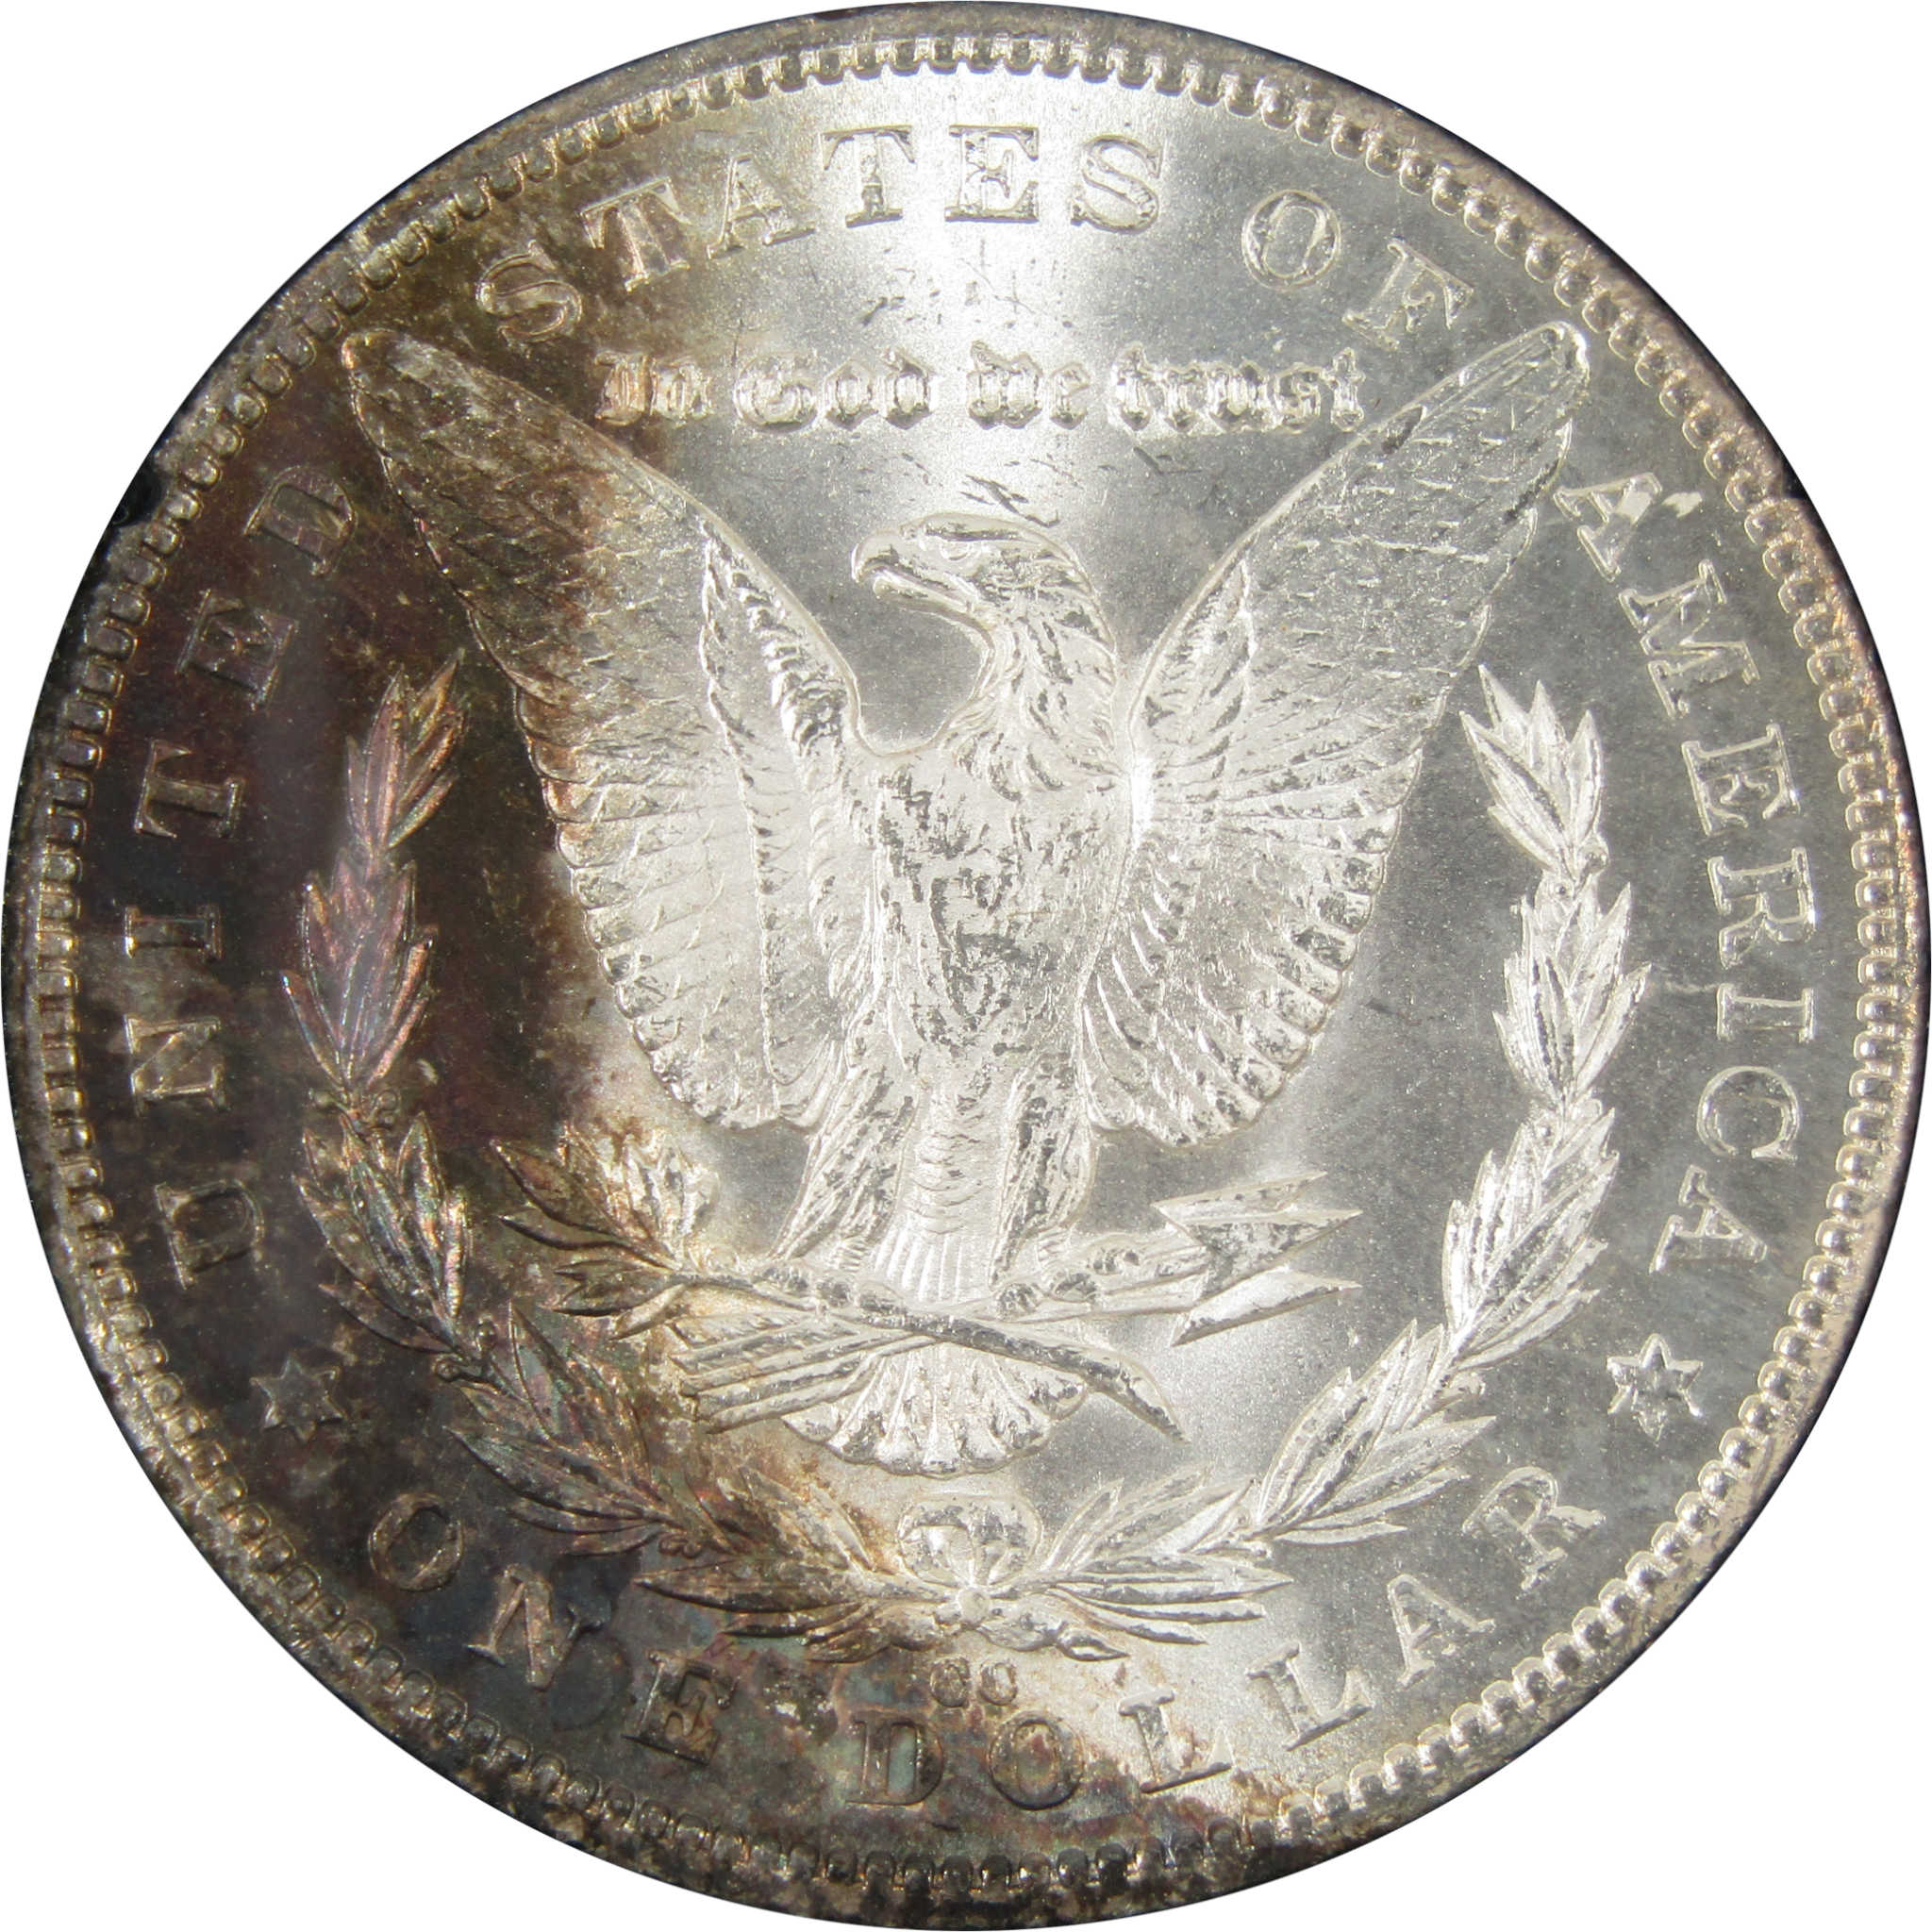 1884 CC GSA Morgan Dollar BU Uncirculated Silver $1 Coin SKU:CPC4399 - Morgan coin - Morgan silver dollar - Morgan silver dollar for sale - Profile Coins &amp; Collectibles